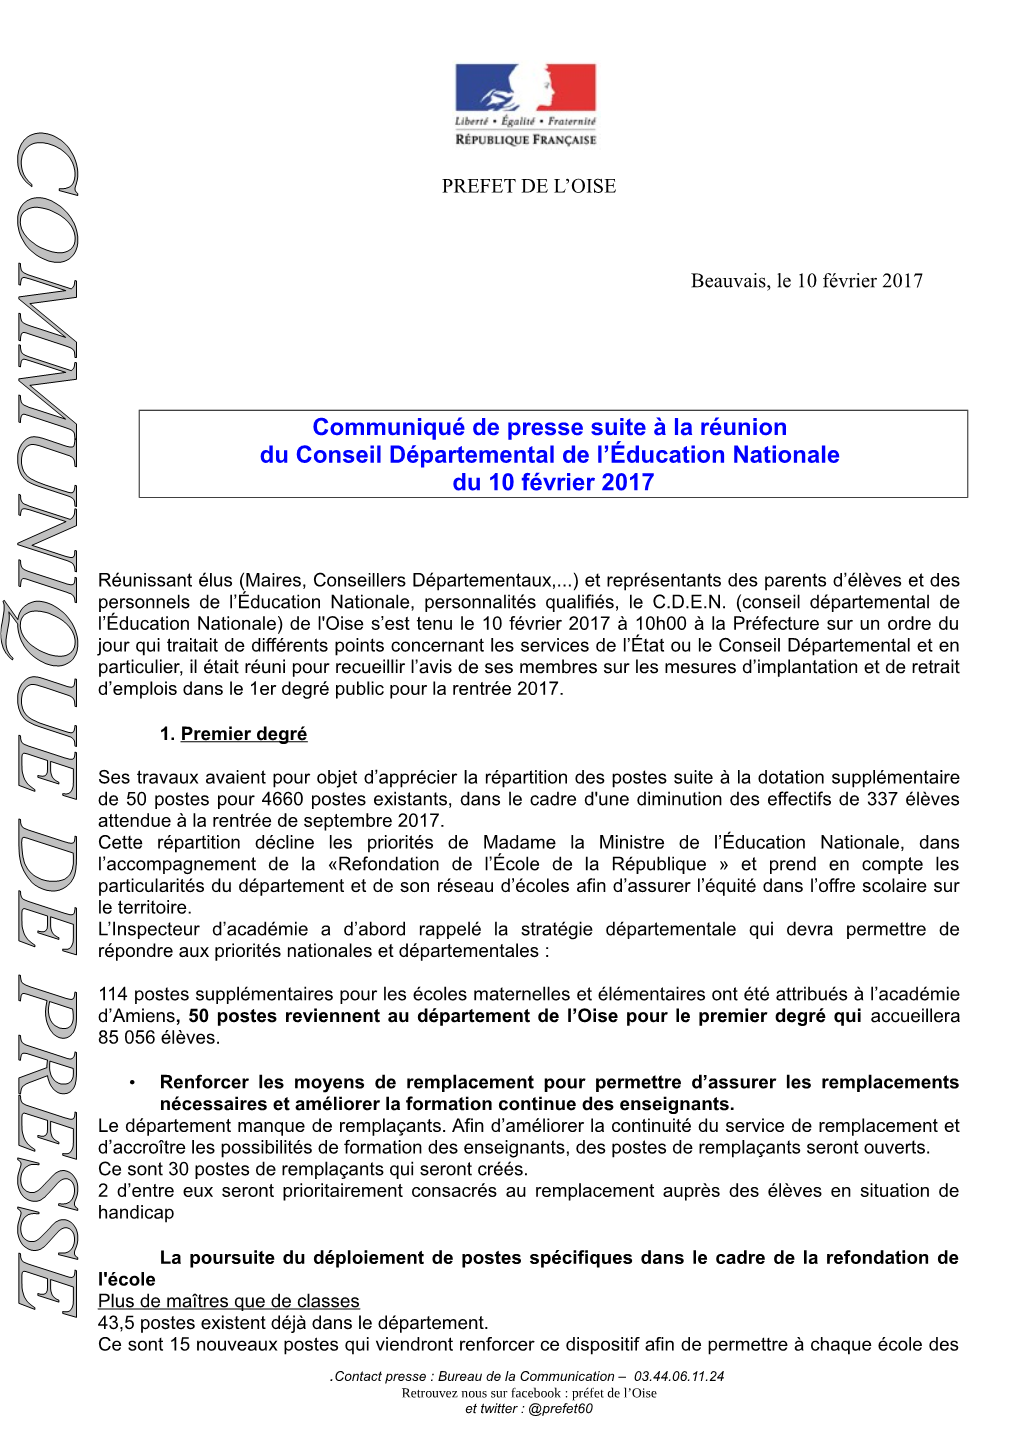 Communiqué De Presse Suite À La Réunion Du Conseil Départemental De L’Éducation Nationale Du 10 Février 2017